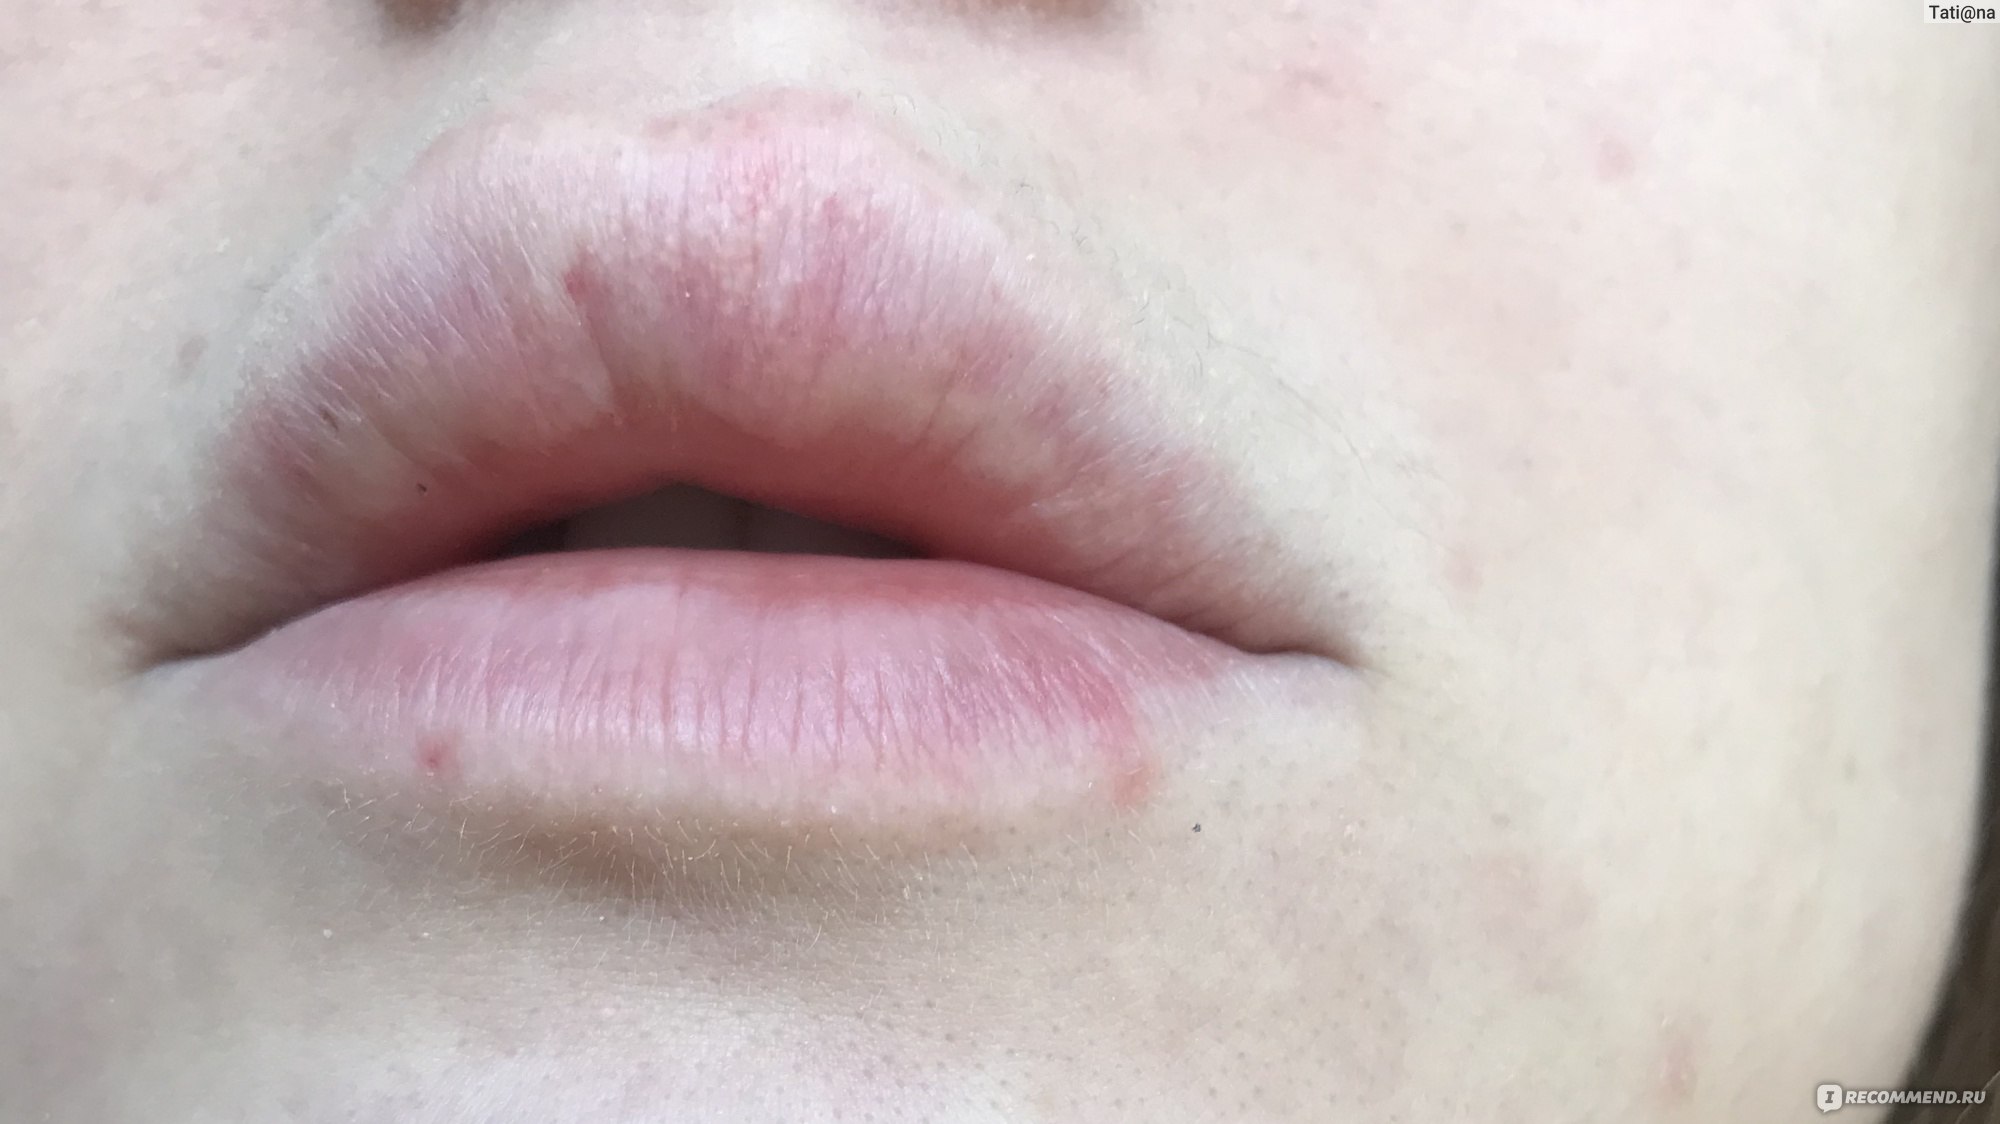 Появление гранул Фордайса на губах после введения филлеров